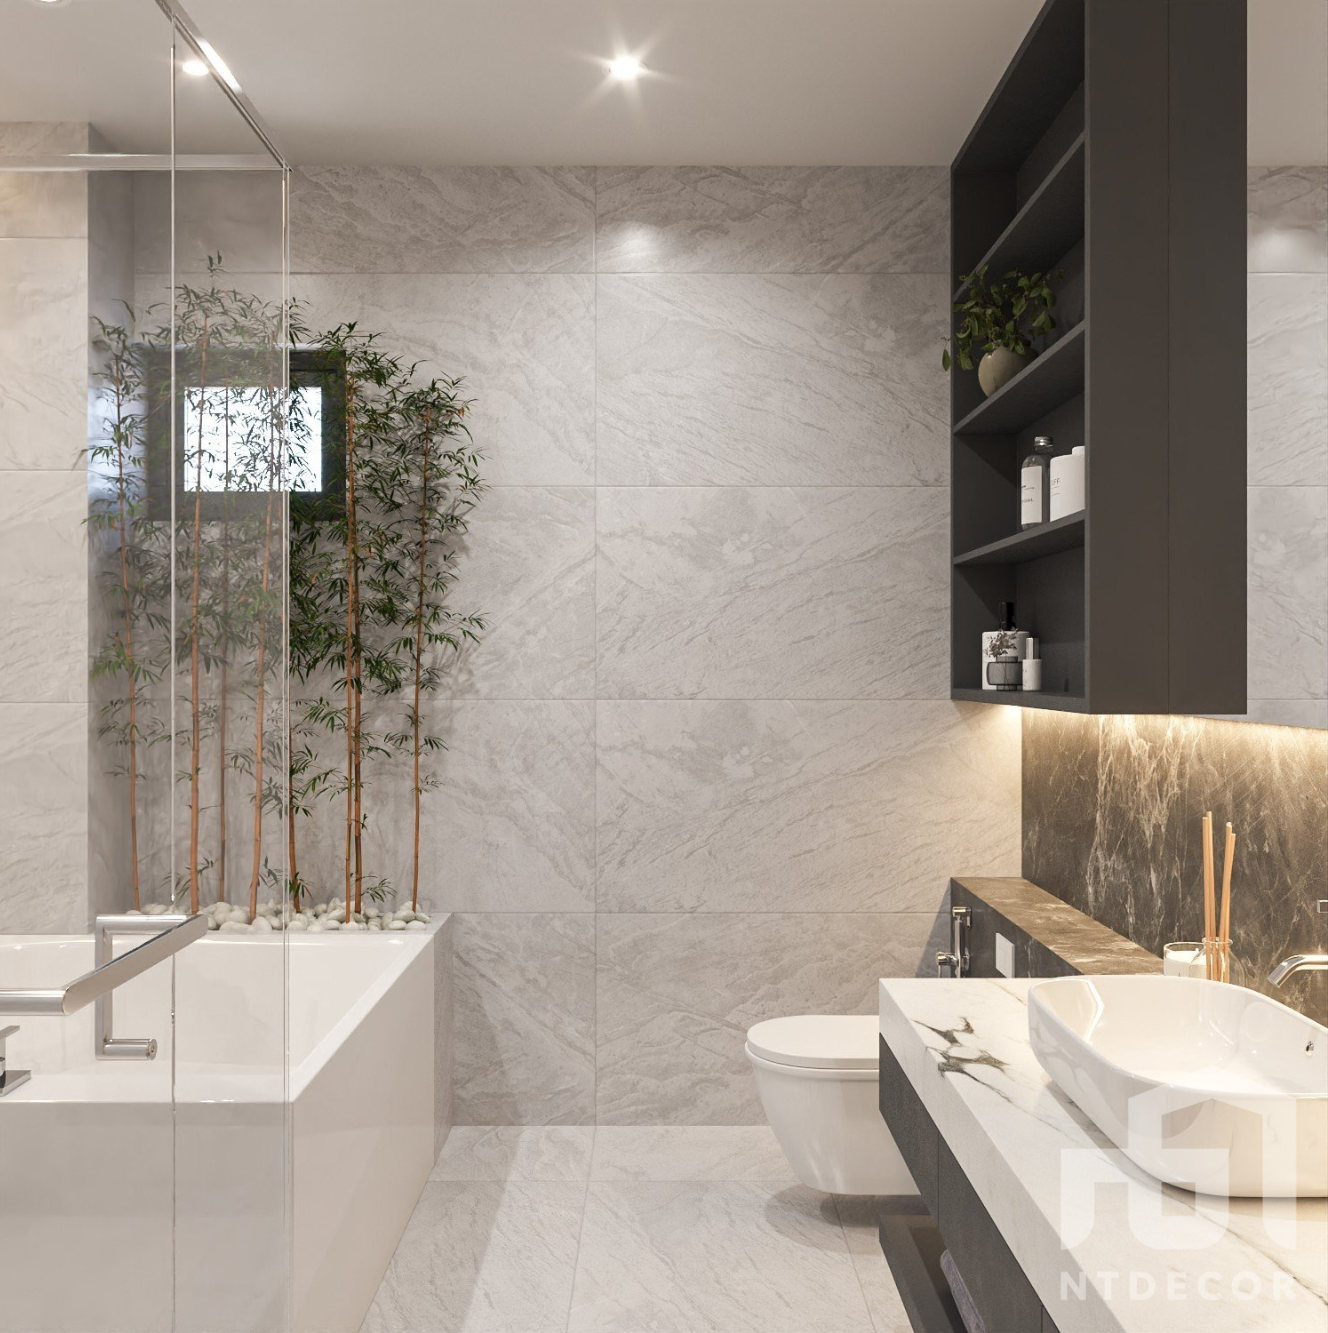 WC 3D Design of Hieu Hang's House Interior Design Modern Style | NTDecor